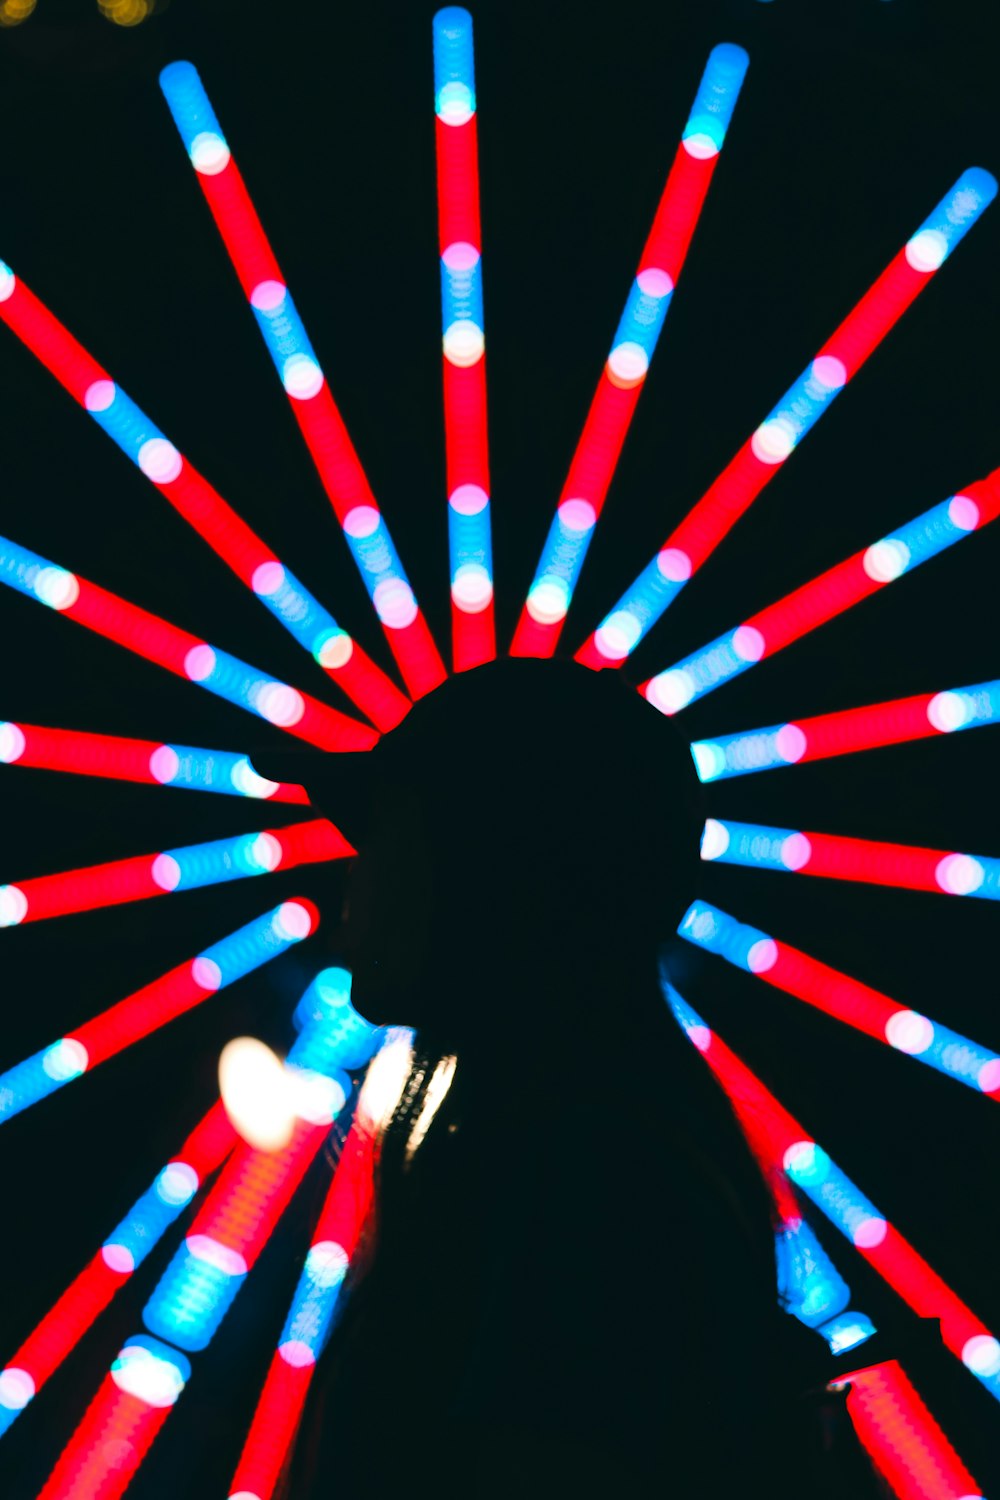 uma pessoa em pé na frente de uma roda gigante com luzes vermelhas, brancas e azuis